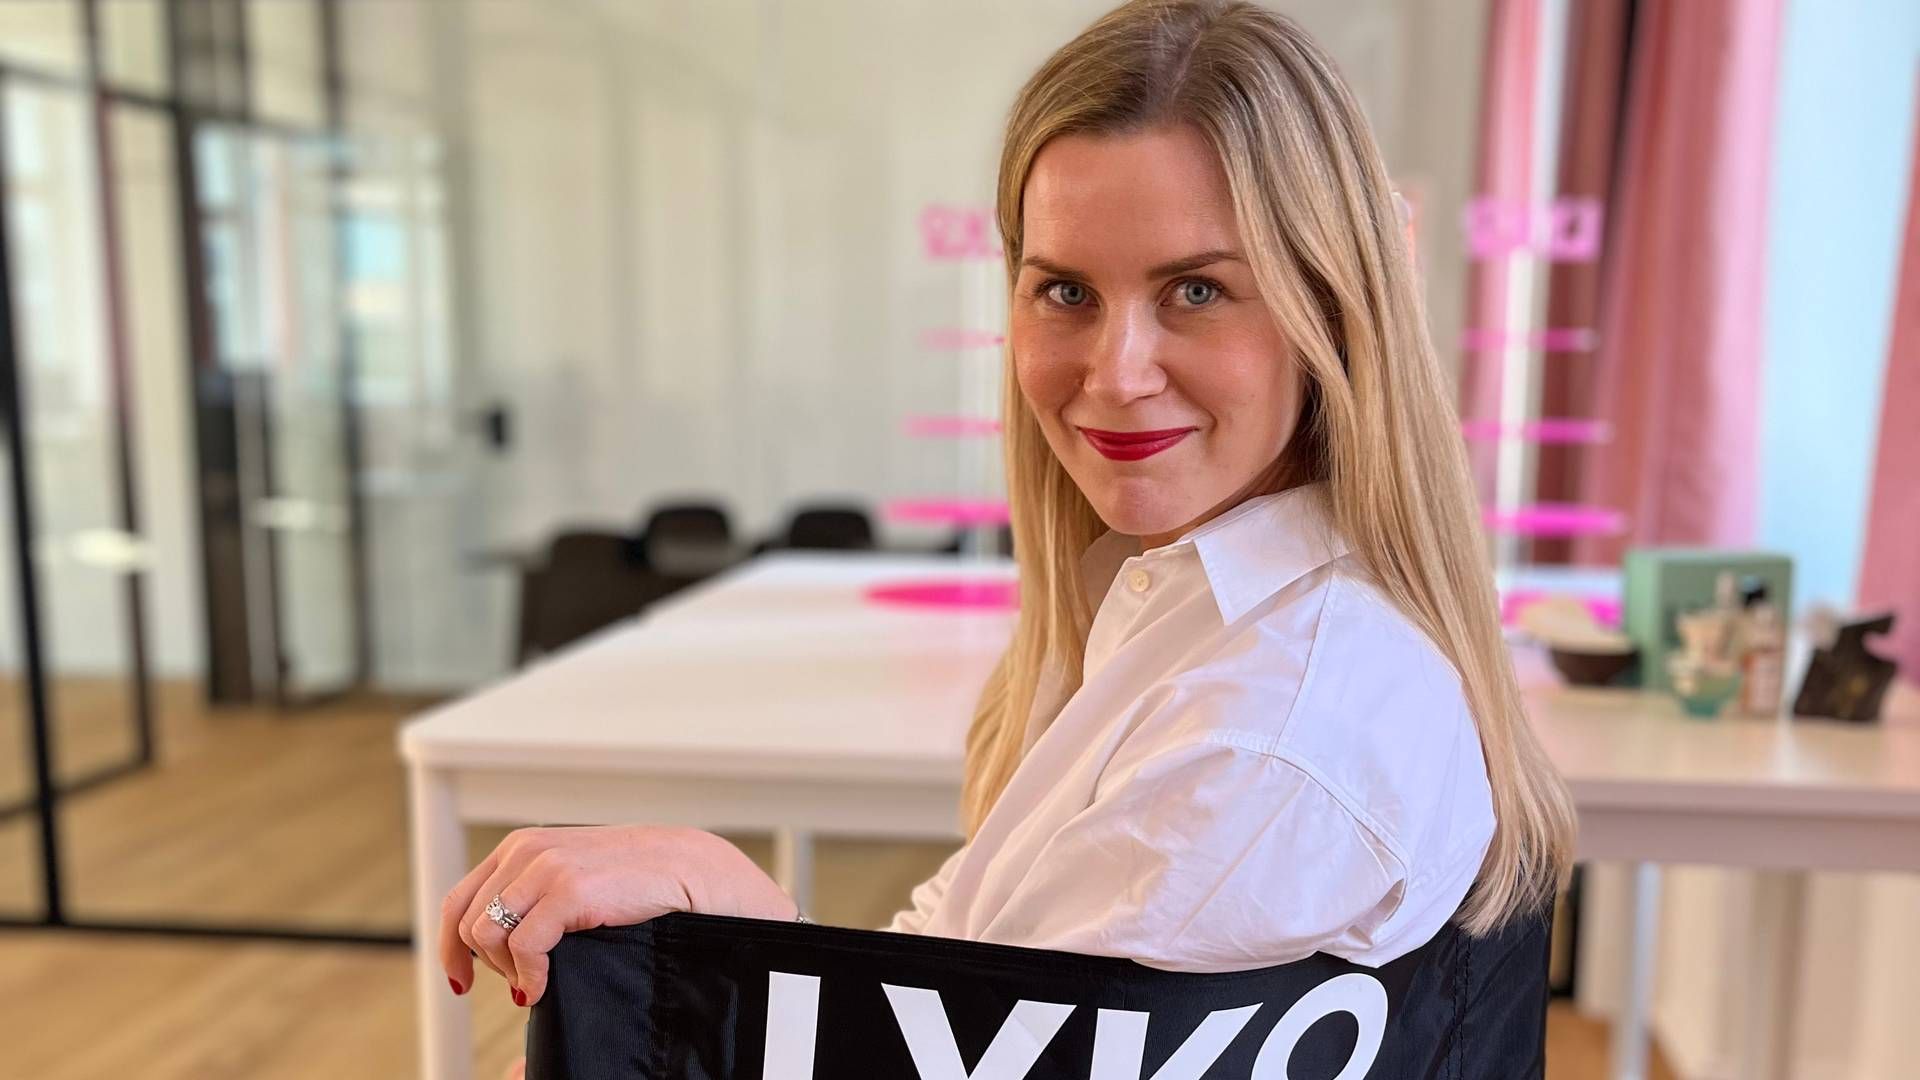 ”Jeg har været interesseret i beauty, siden jeg var meget lille," fortæller Lykos nye landechef. Jenni Peltola Toft er oprindeligt fra Finland, men har boet snart 14 år i Danmark, mange af dem med arbejde i L'Oréal. | Foto: PR/Lyko